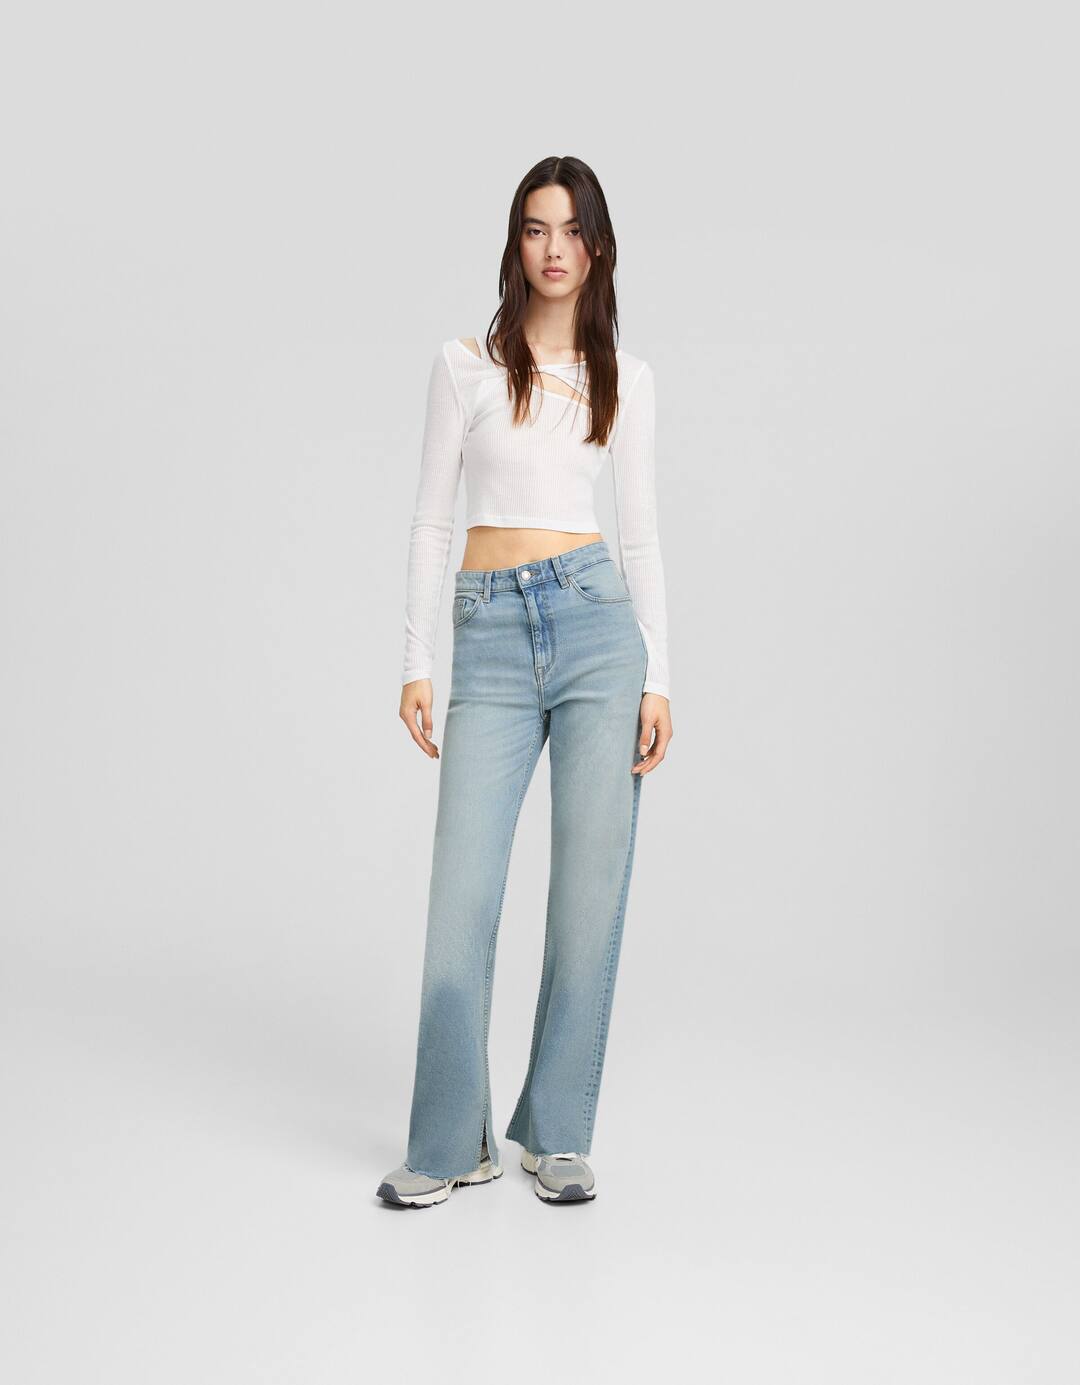 Jeans direitas conforto abertura lateral